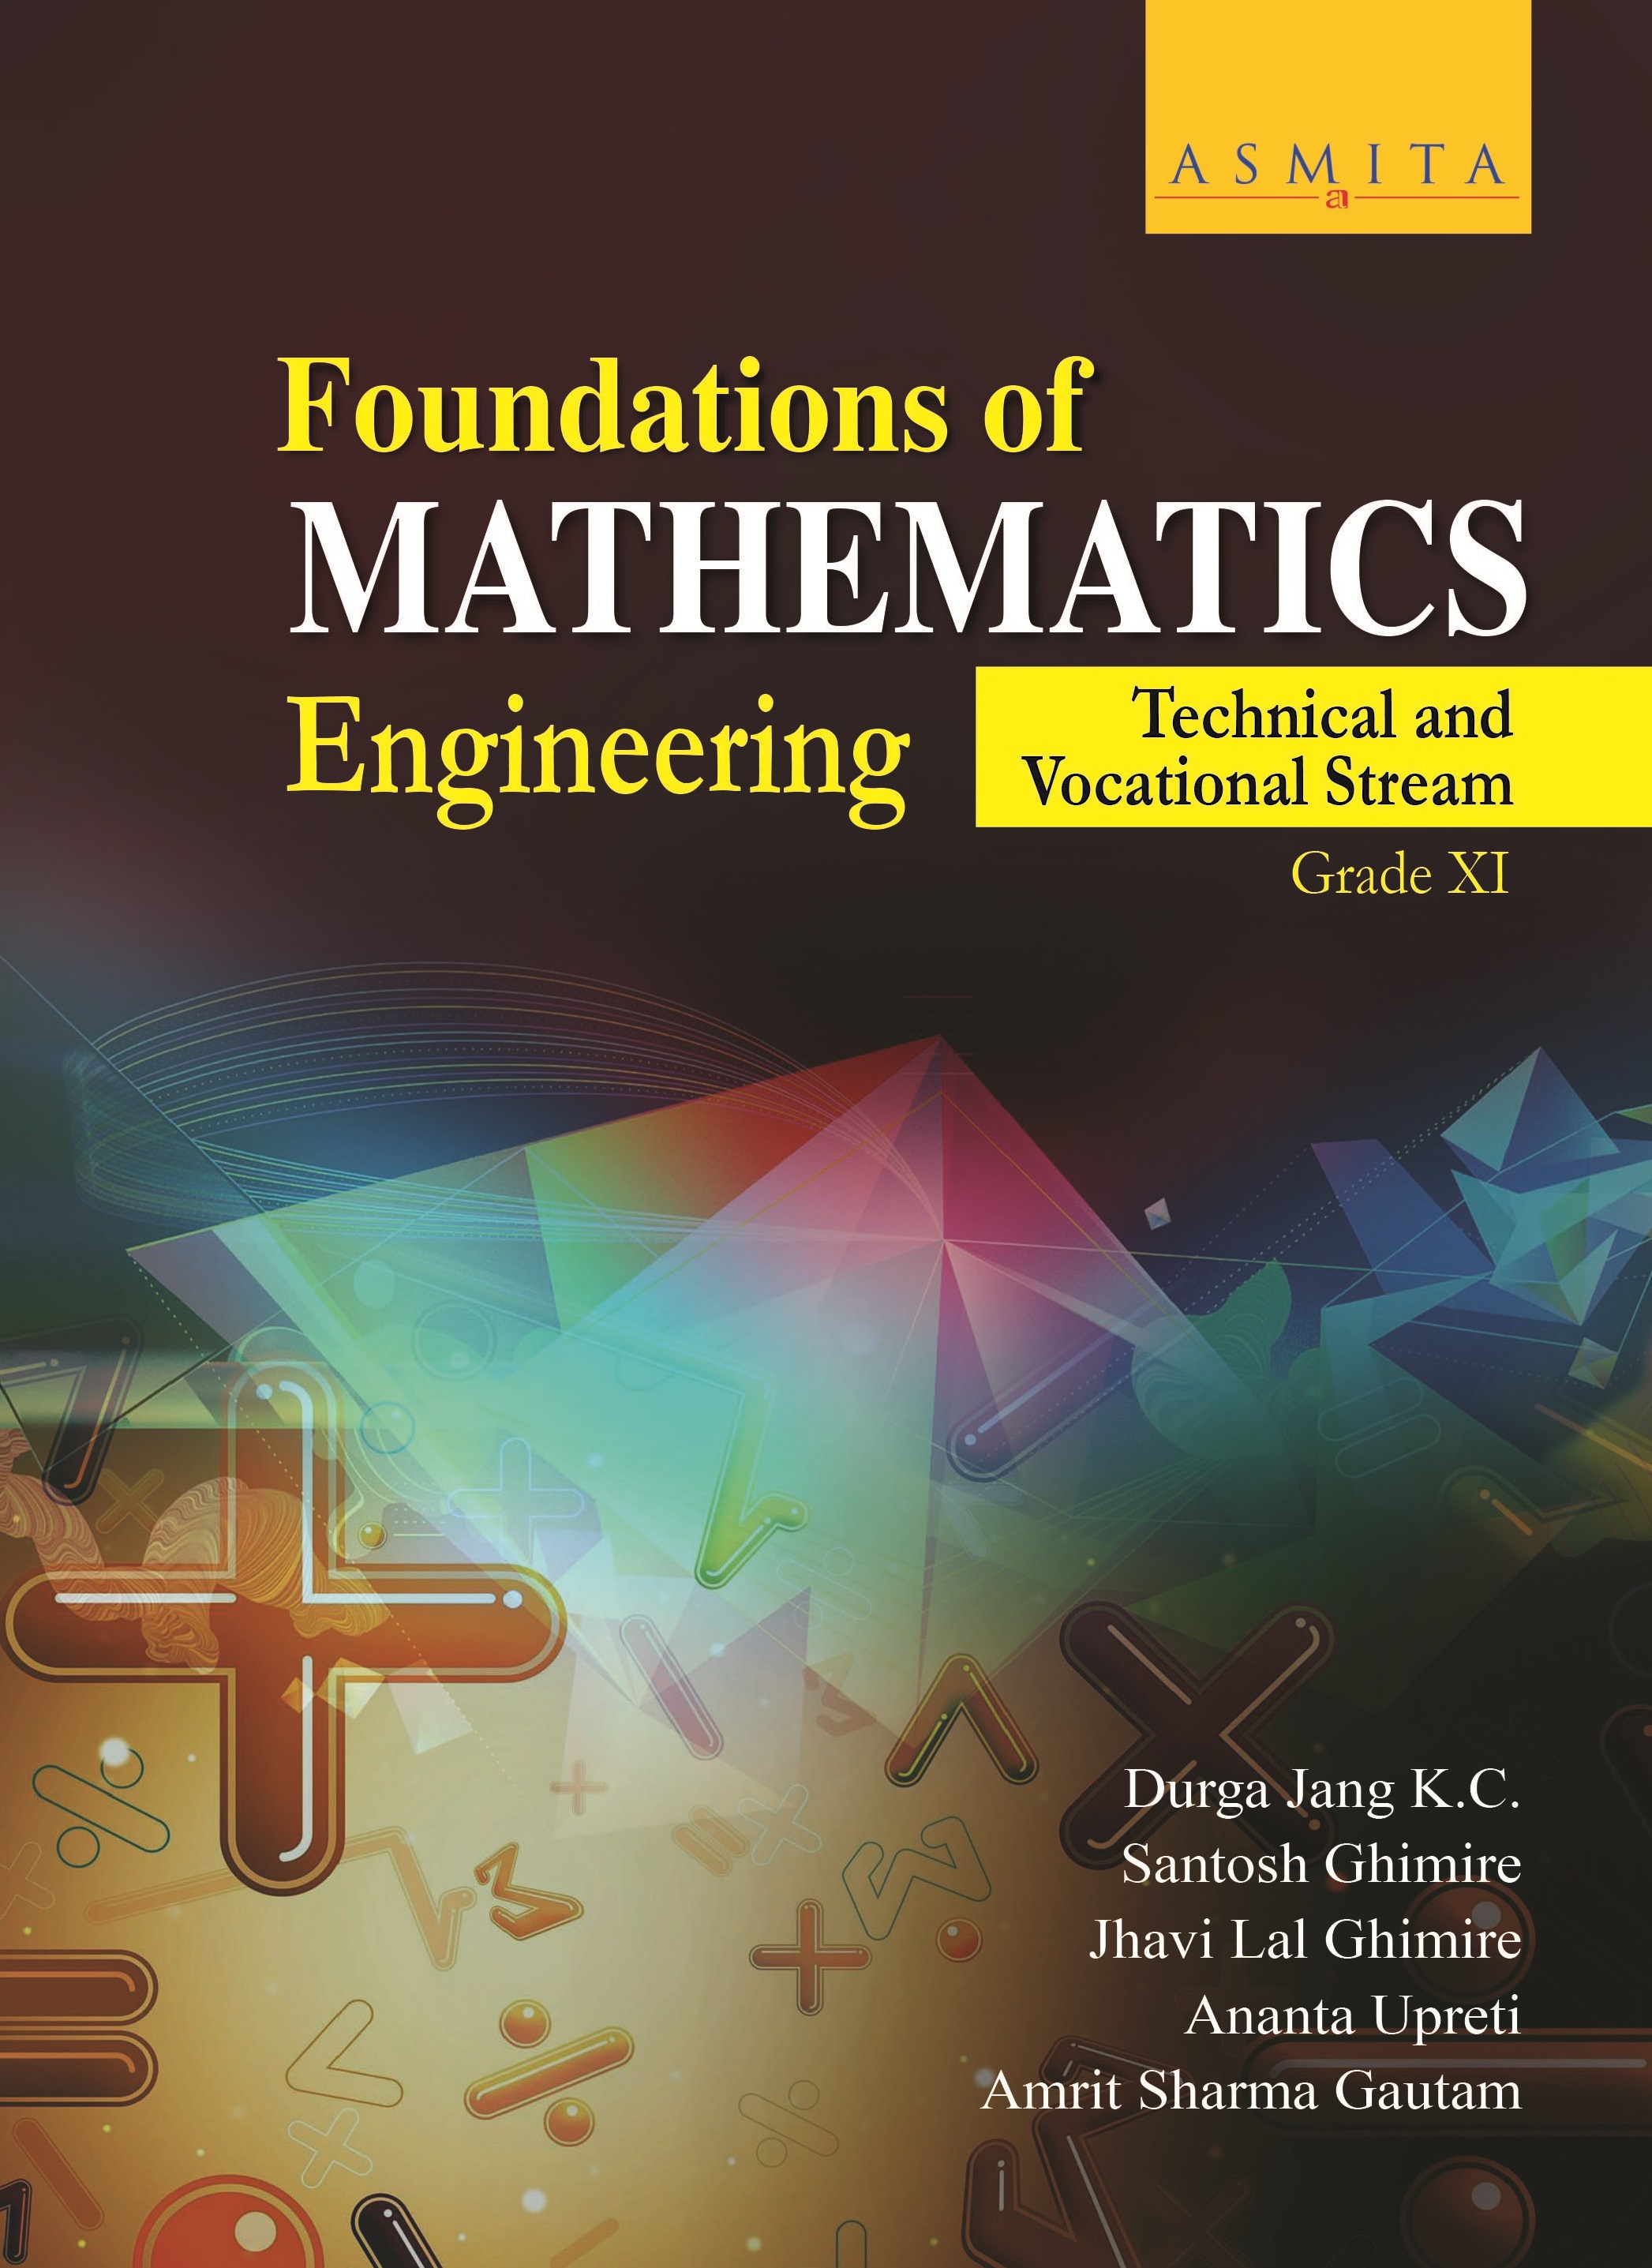 Foundations of Mathematics Engineering -TVS